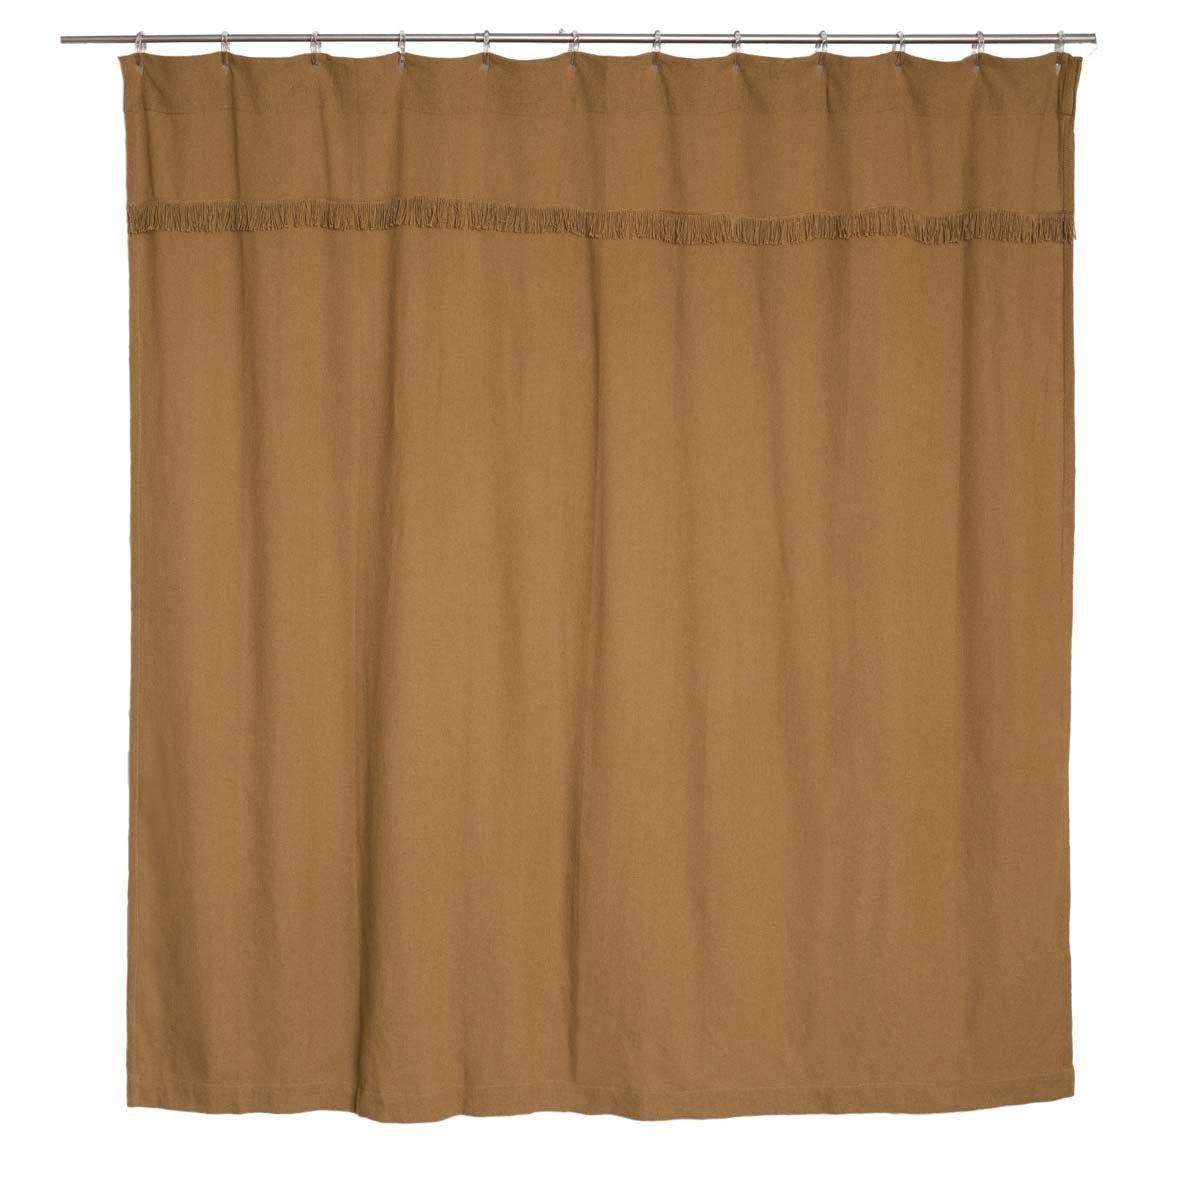 Burlap Vintage/Antique/Natural Shower Curtain 72